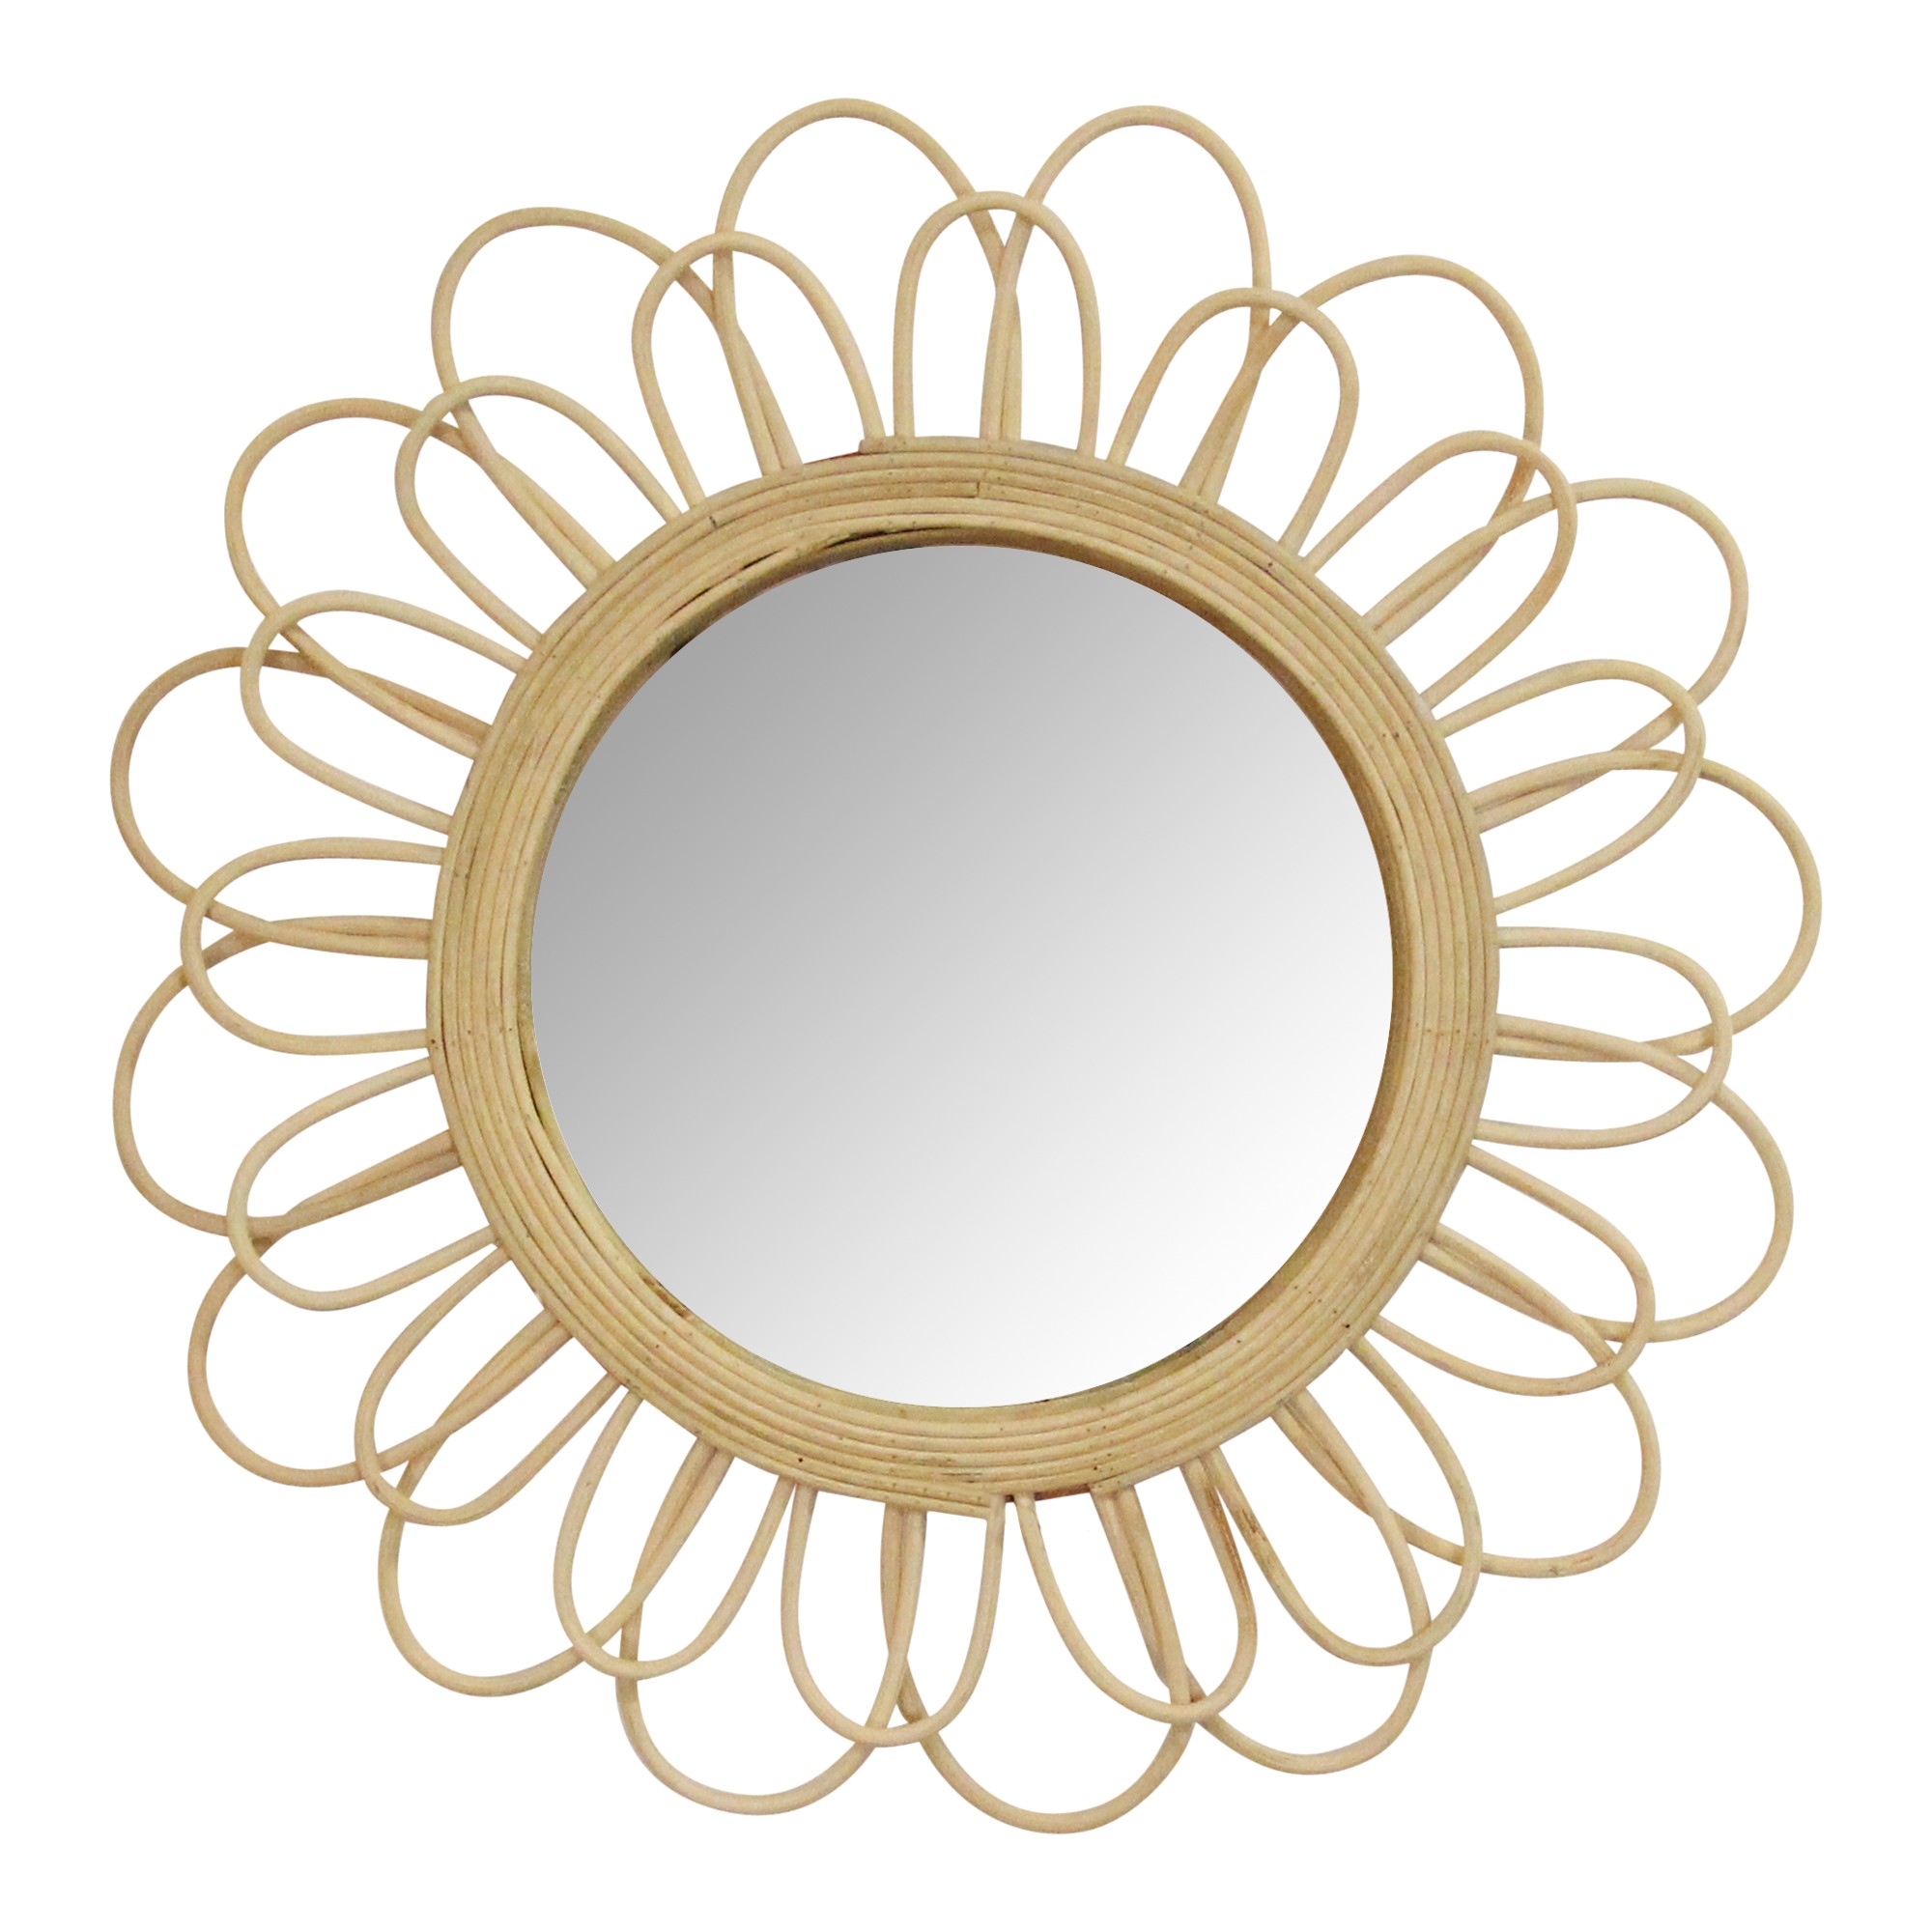 Rattan Flower Petal Design Round Wall Mirror